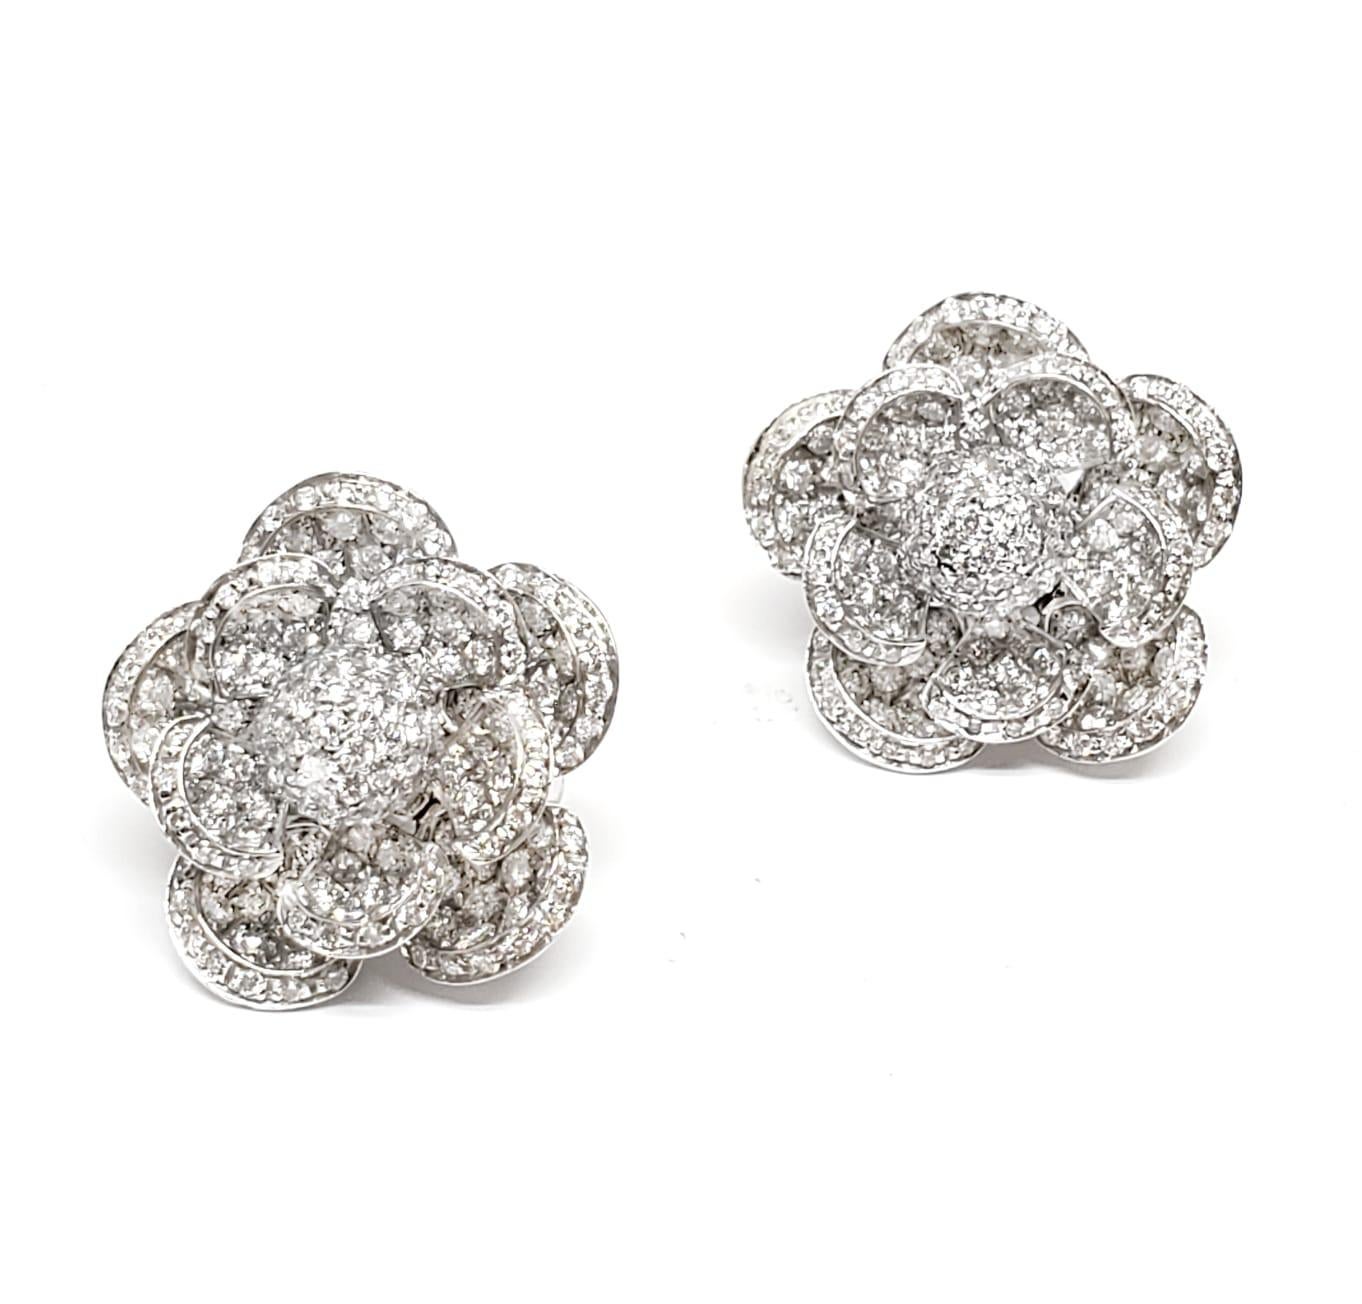 Boucles d'oreilles en or blanc 18 carats avec fleur en diamant 4,99 carats Andreoli

Ces boucles d'oreilles comportent :
- diamant de 4,99 carats
- 25,65 grammes d'or blanc 18K
- Fabriqué en Italie